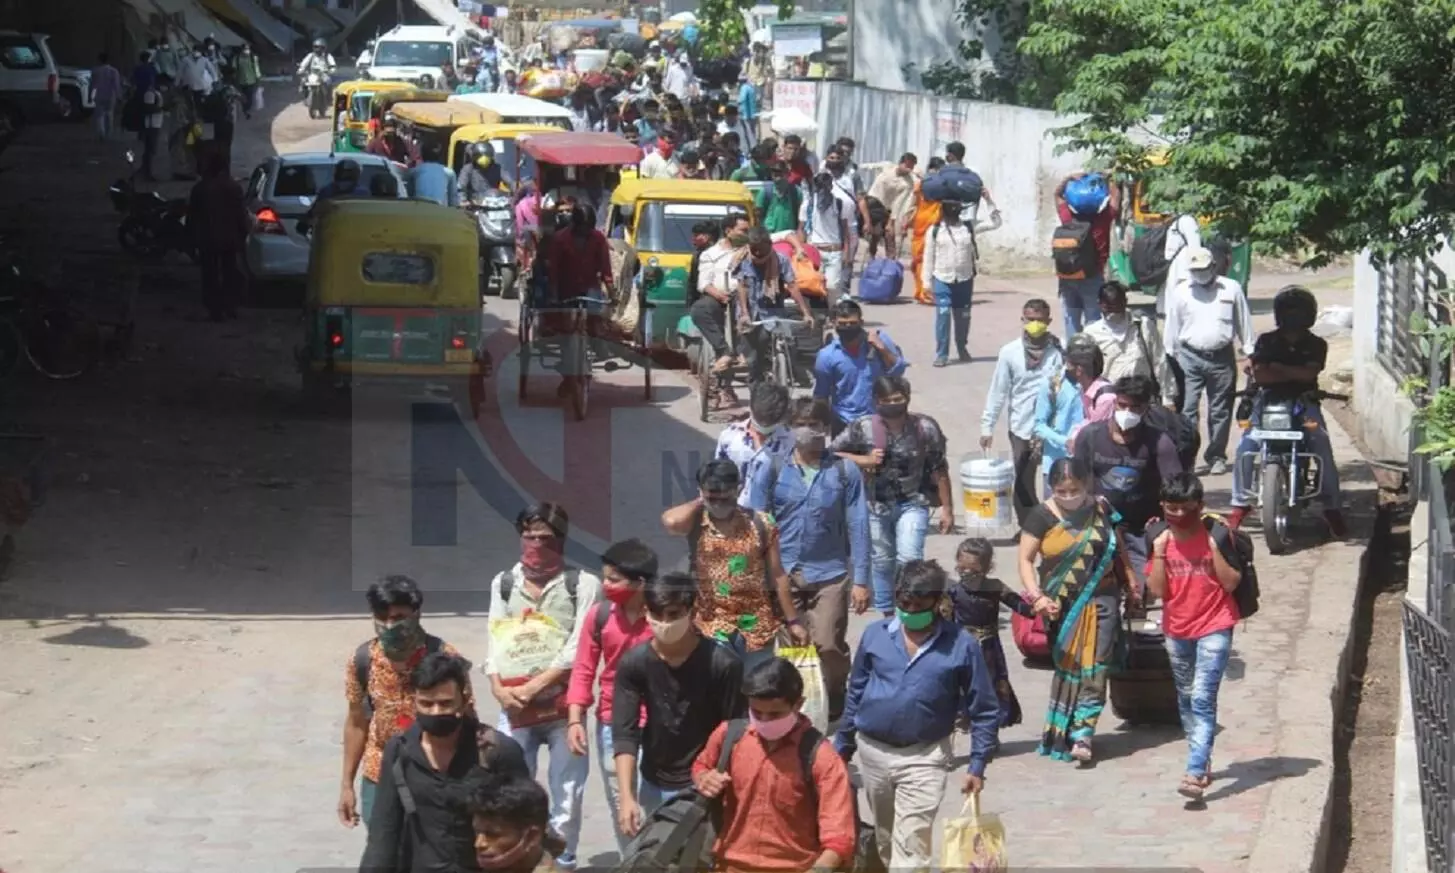 चारबाग रेलवे स्टेशन पर बड़ी संख्या में पहुंच रहे हैं प्रवासी मजदूर